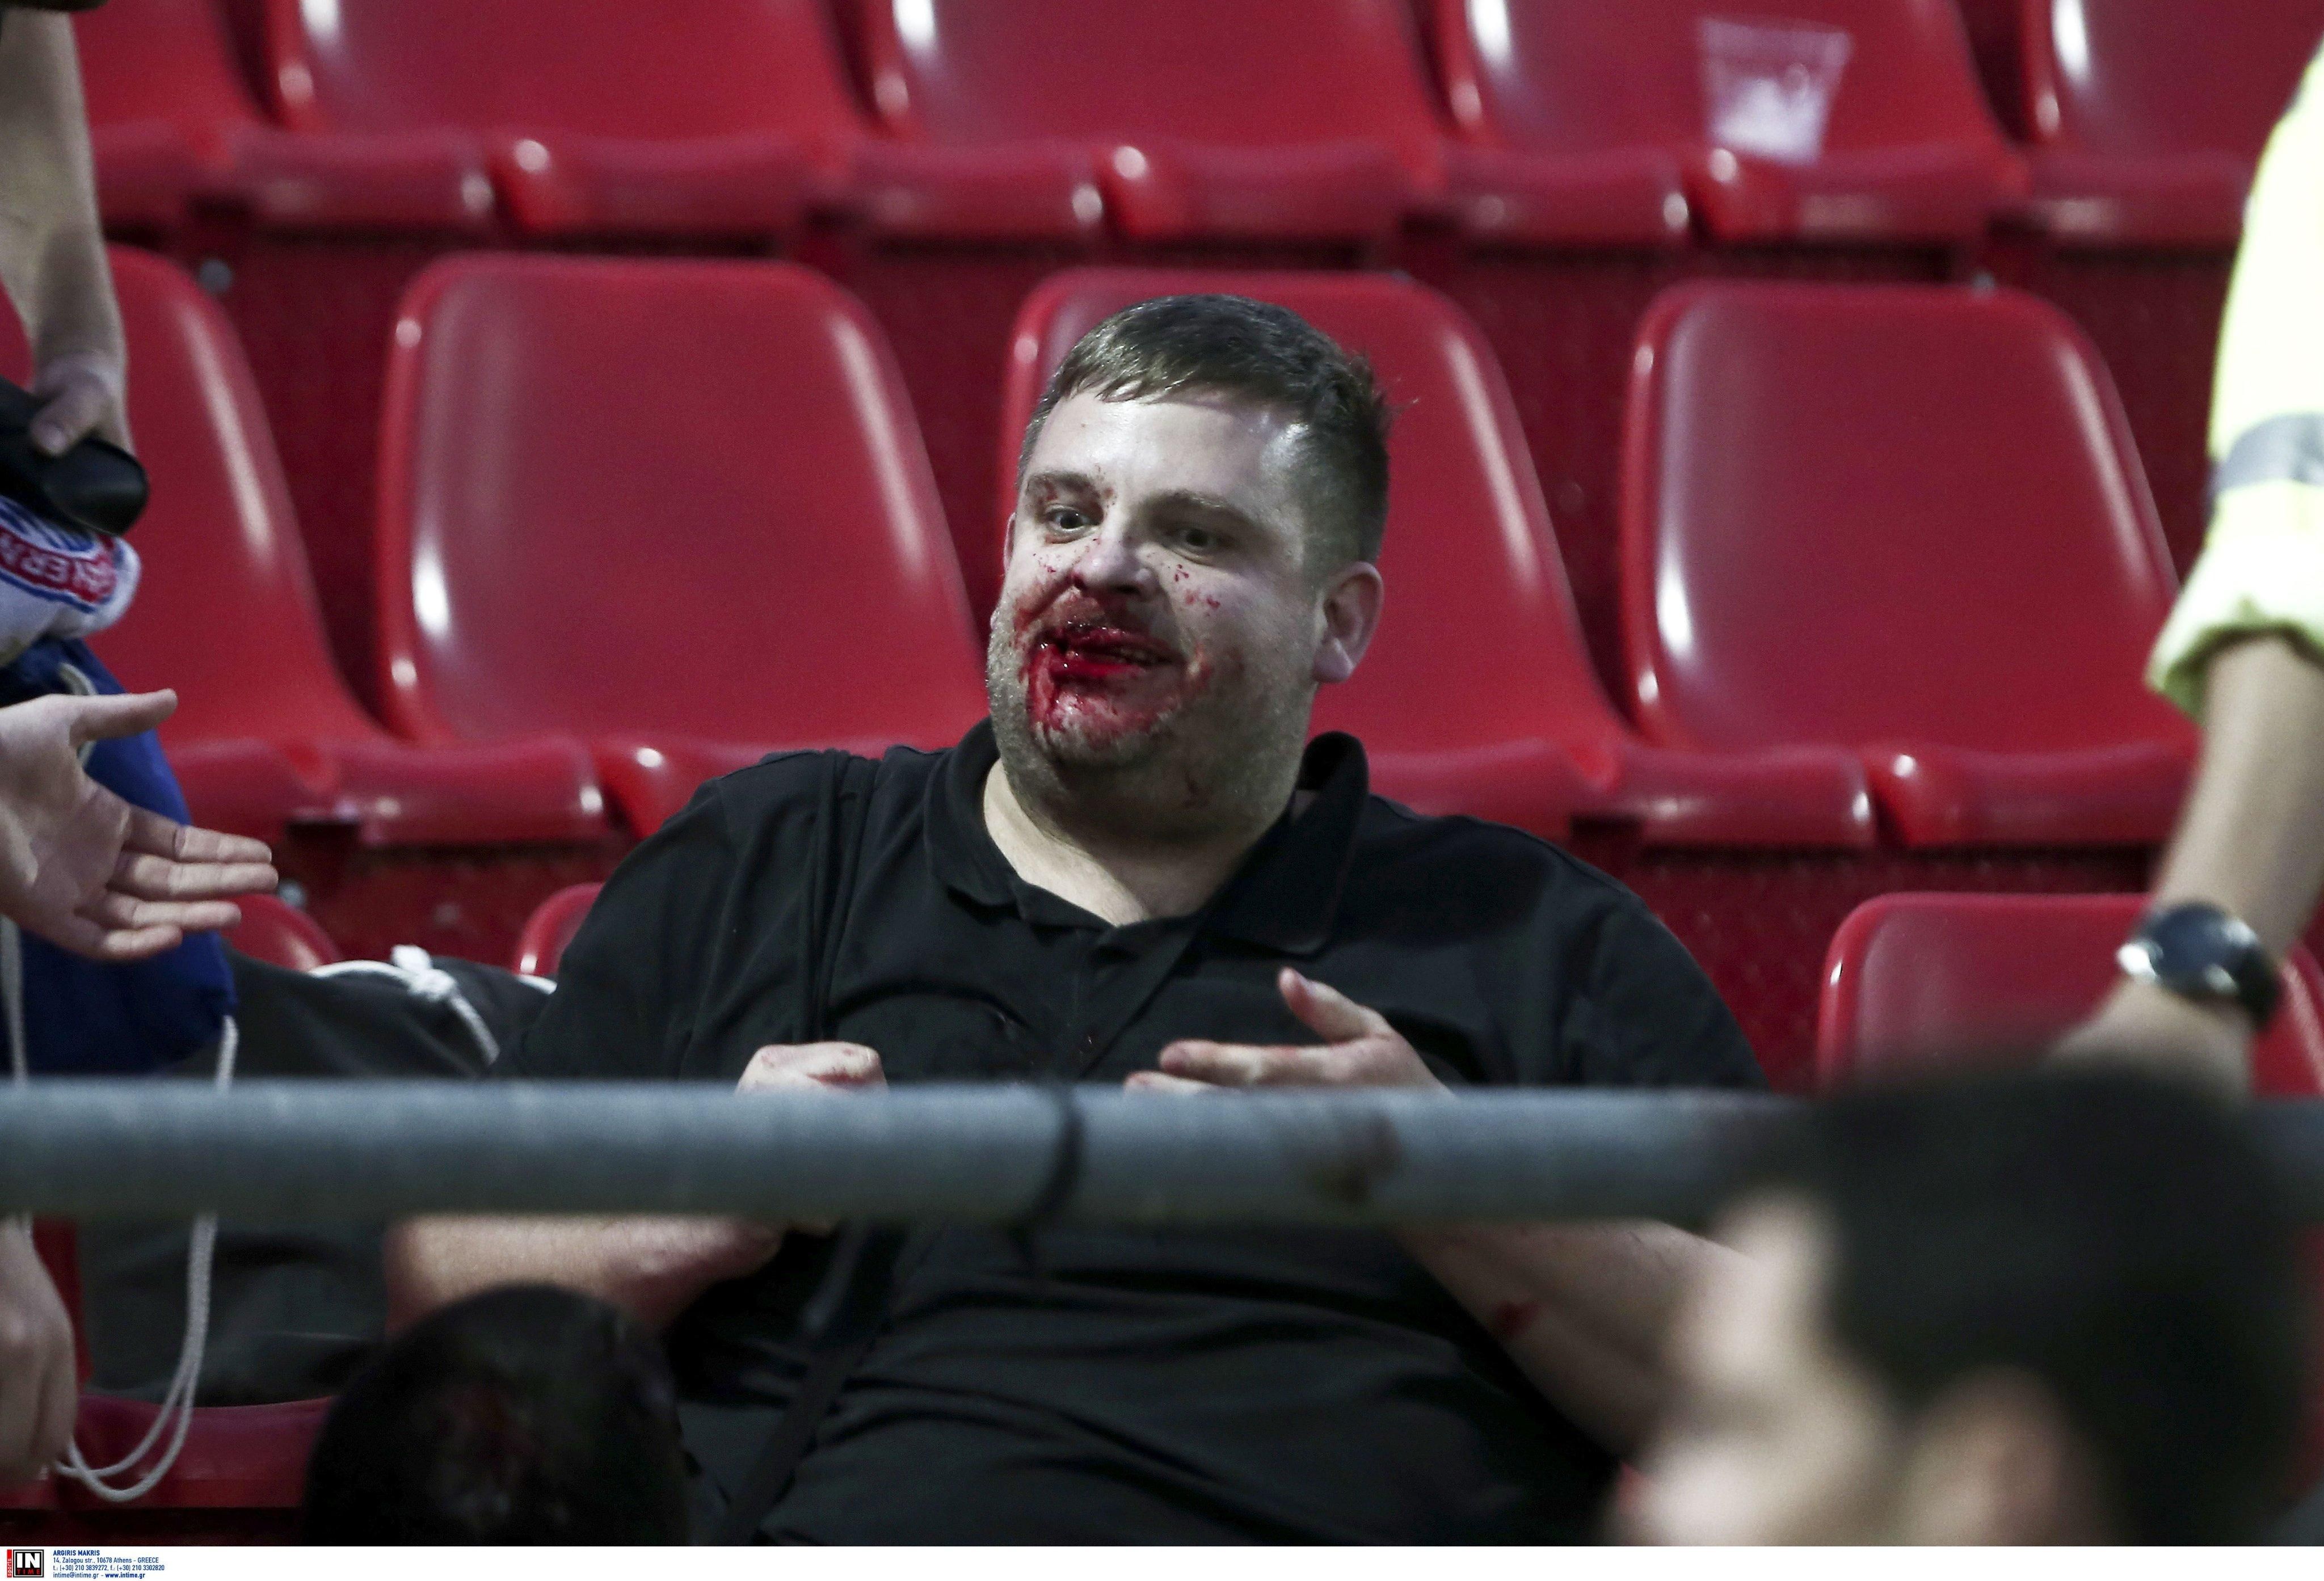 На матче юношеской Лиги чемпионов фанаты атаковали соперников палками: кровавые фото и видео 18+